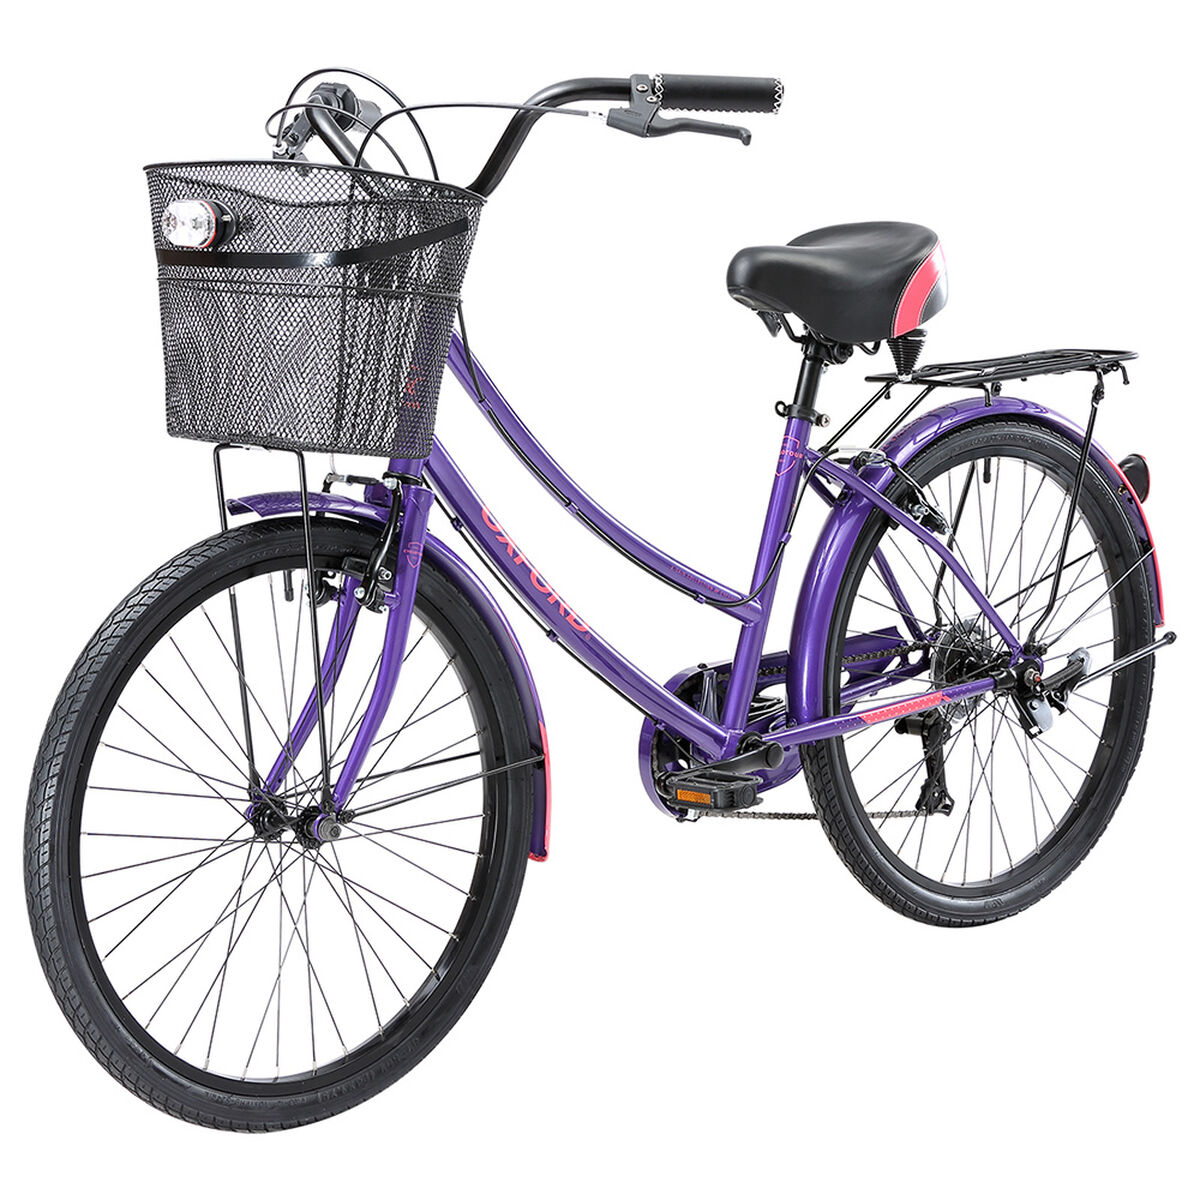 Bicicleta Oxford Mujer BP2448 Aro 24